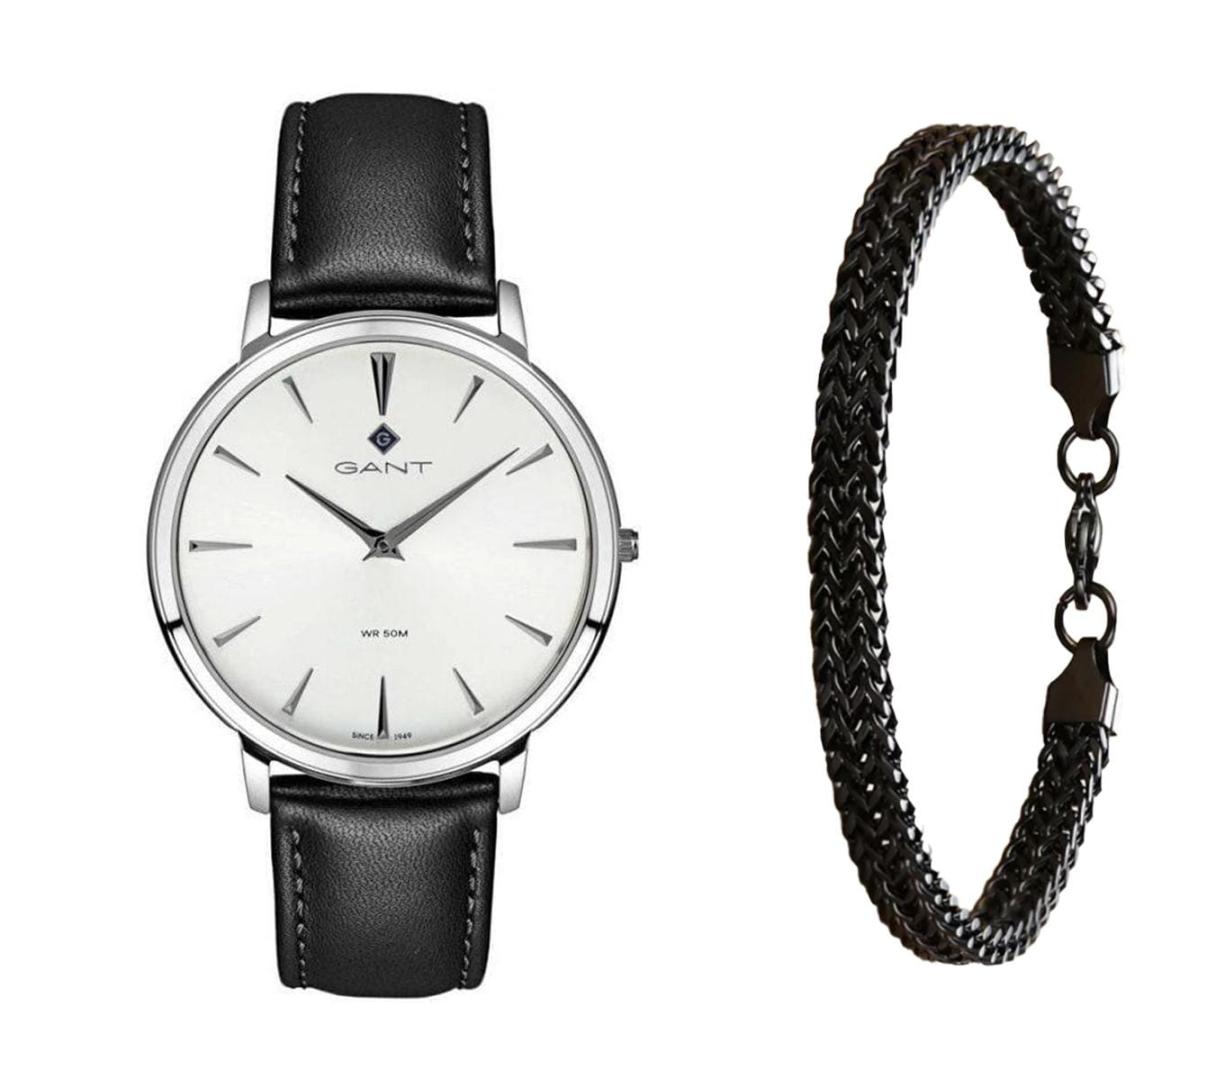 שעון יד אנלוגי לגבר gant g133002 גאנט עם צמיד חוליות שחור